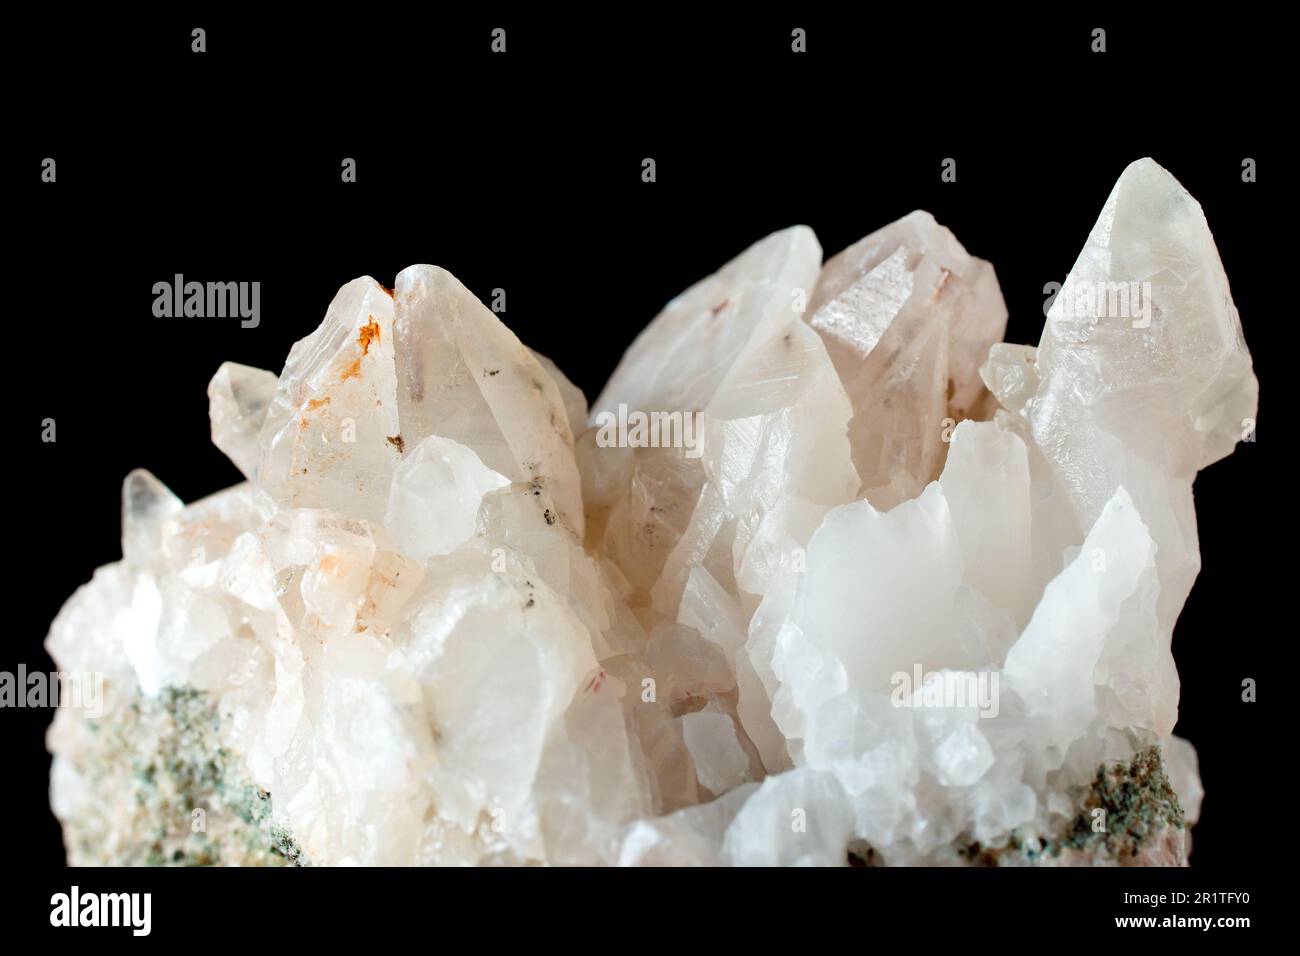 Nahaufnahme eines Felsens mit milchigen Quarzkristallen, eines der häufigsten felsbildenden Silikatmineralien. Stockfoto